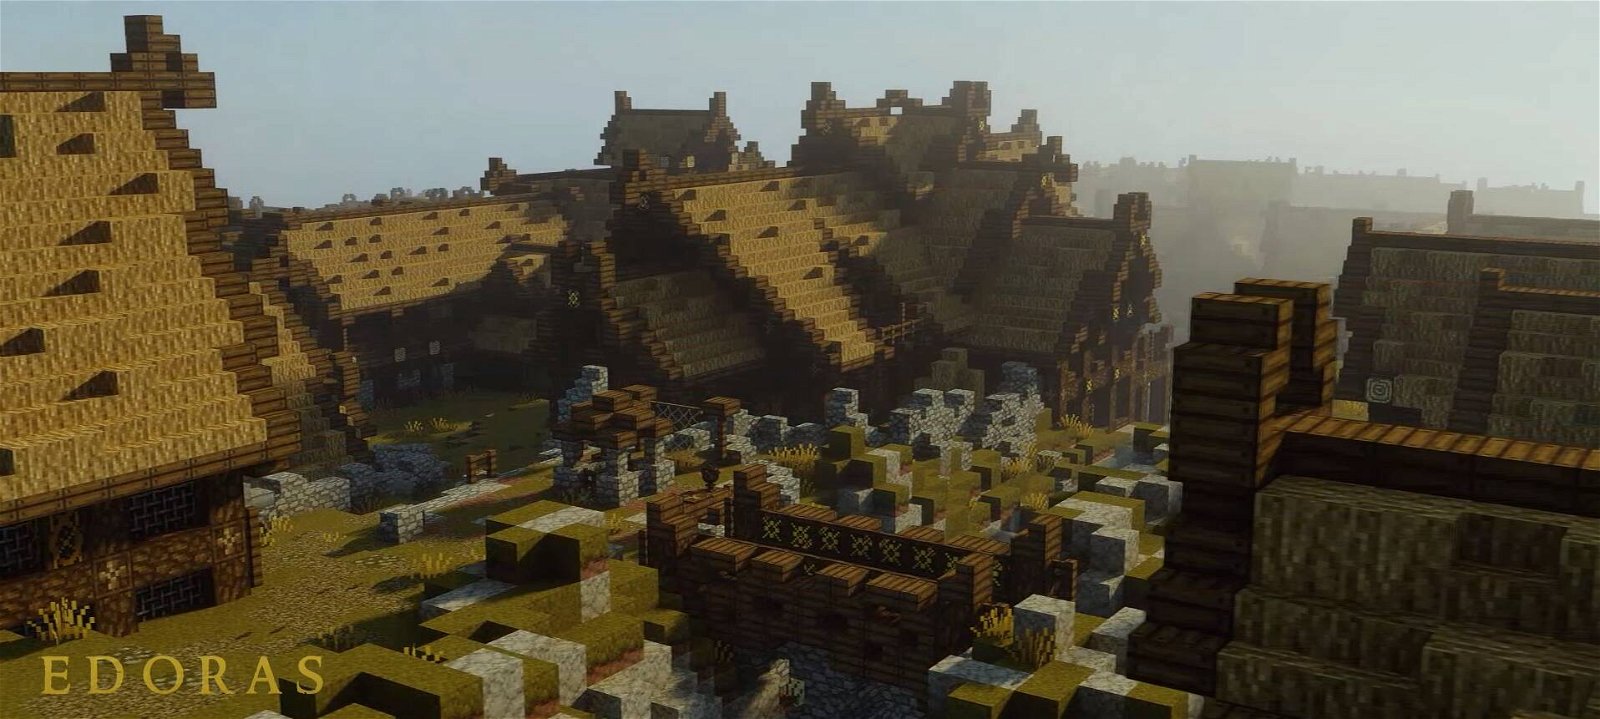 Immagine di Minecraft: riprodotta parte di Rohan, ed è meravigliosa